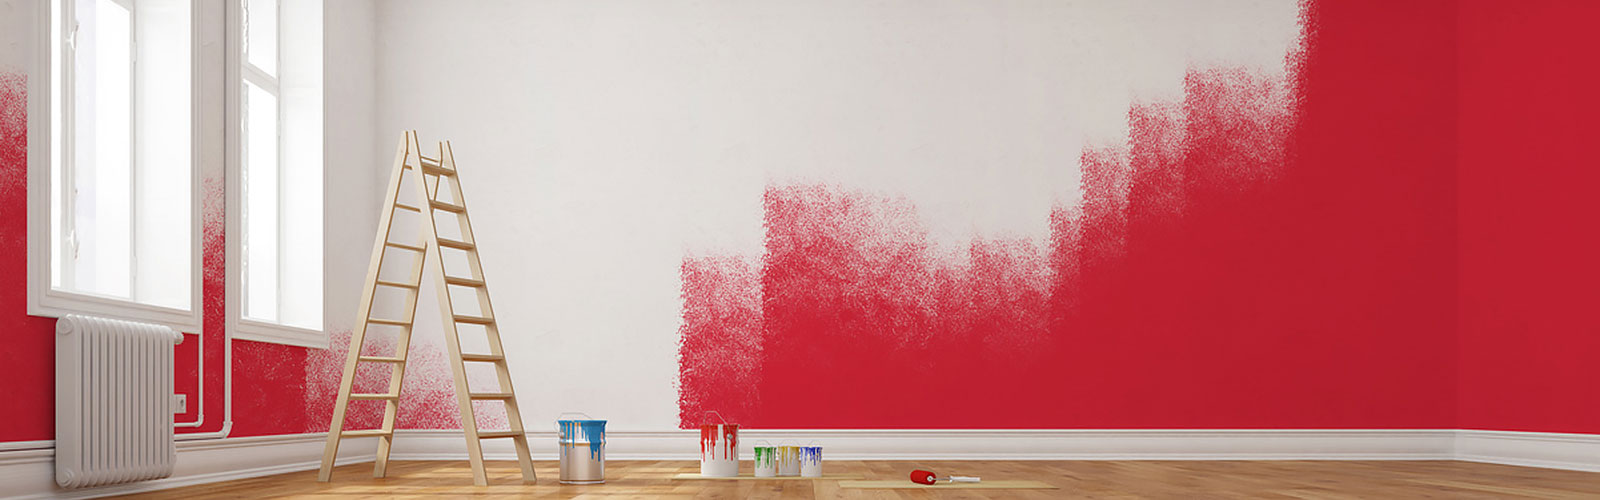 Malermeister - Heiko Schorn | Raum, rote Wandfarbe, Leiter